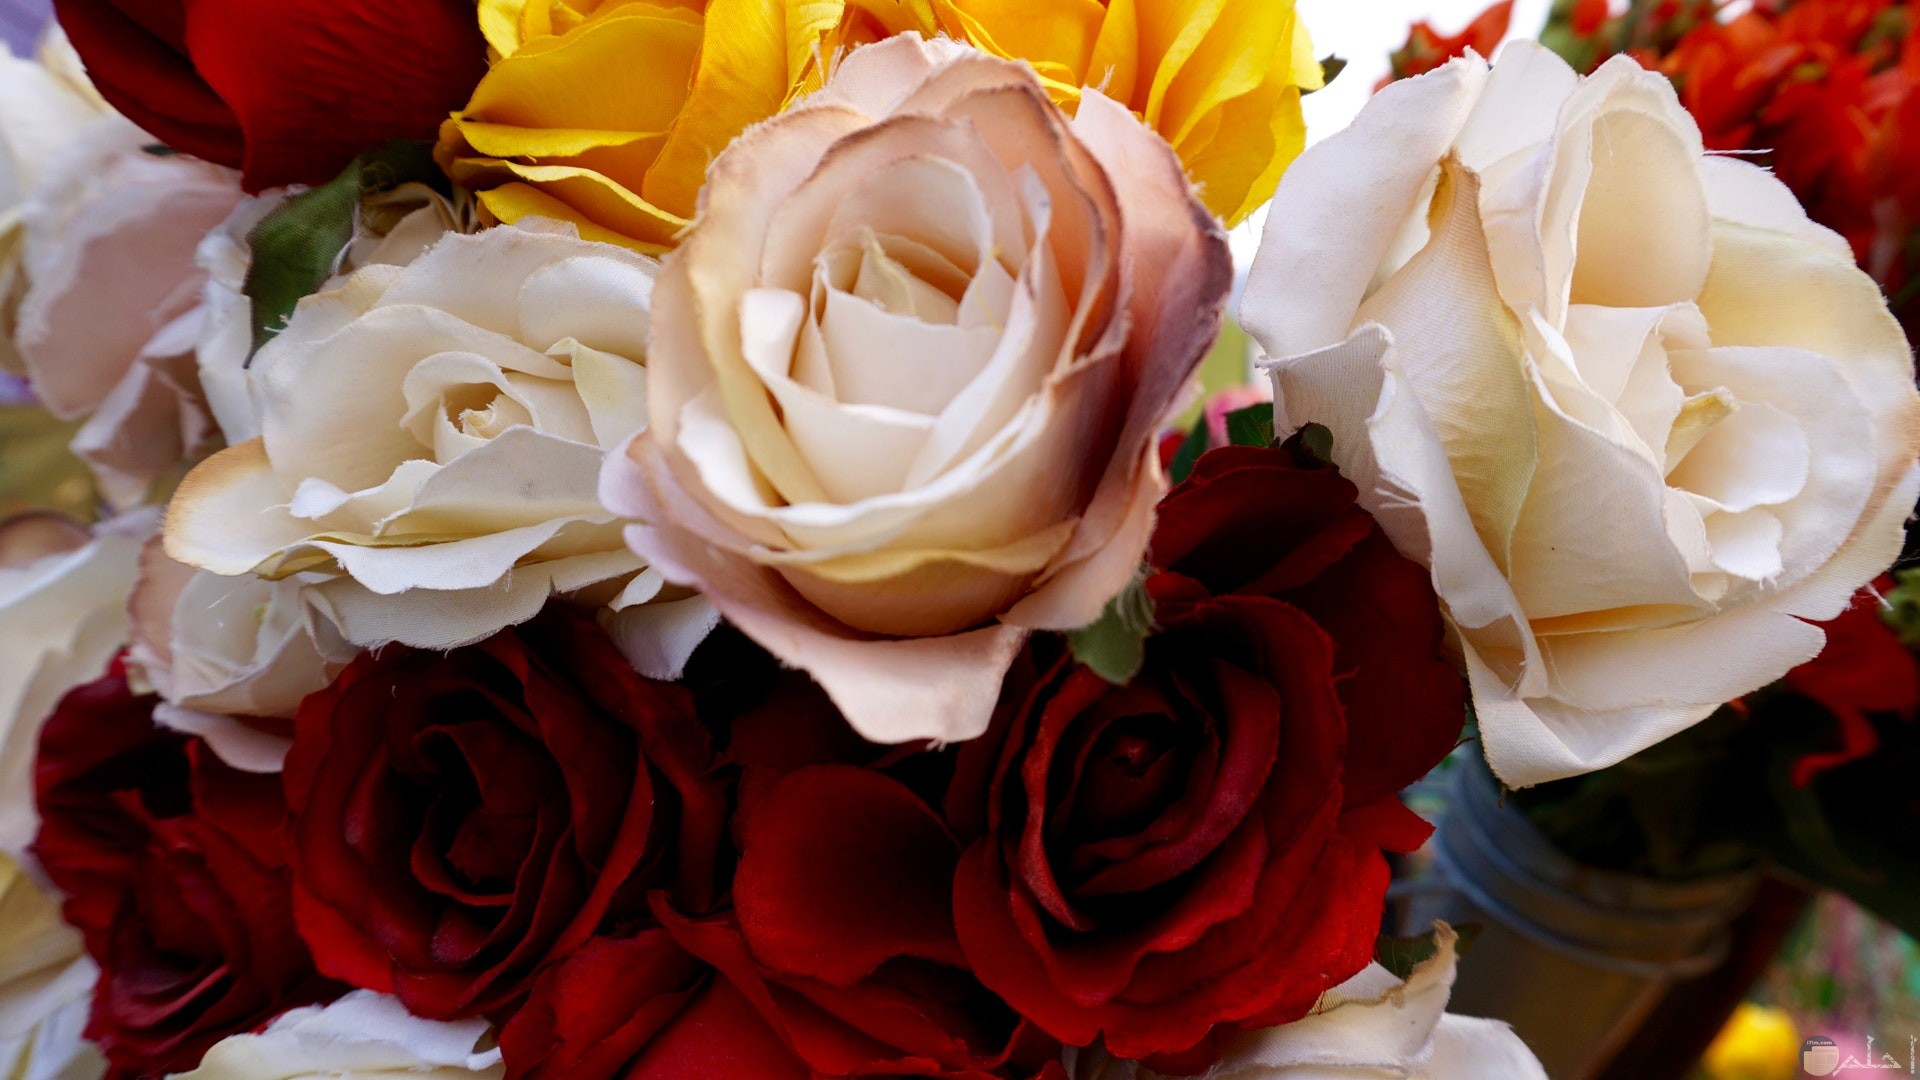 صورة مميزة لمجموعة من الورود البيضاء والحمراء الجميلة معا